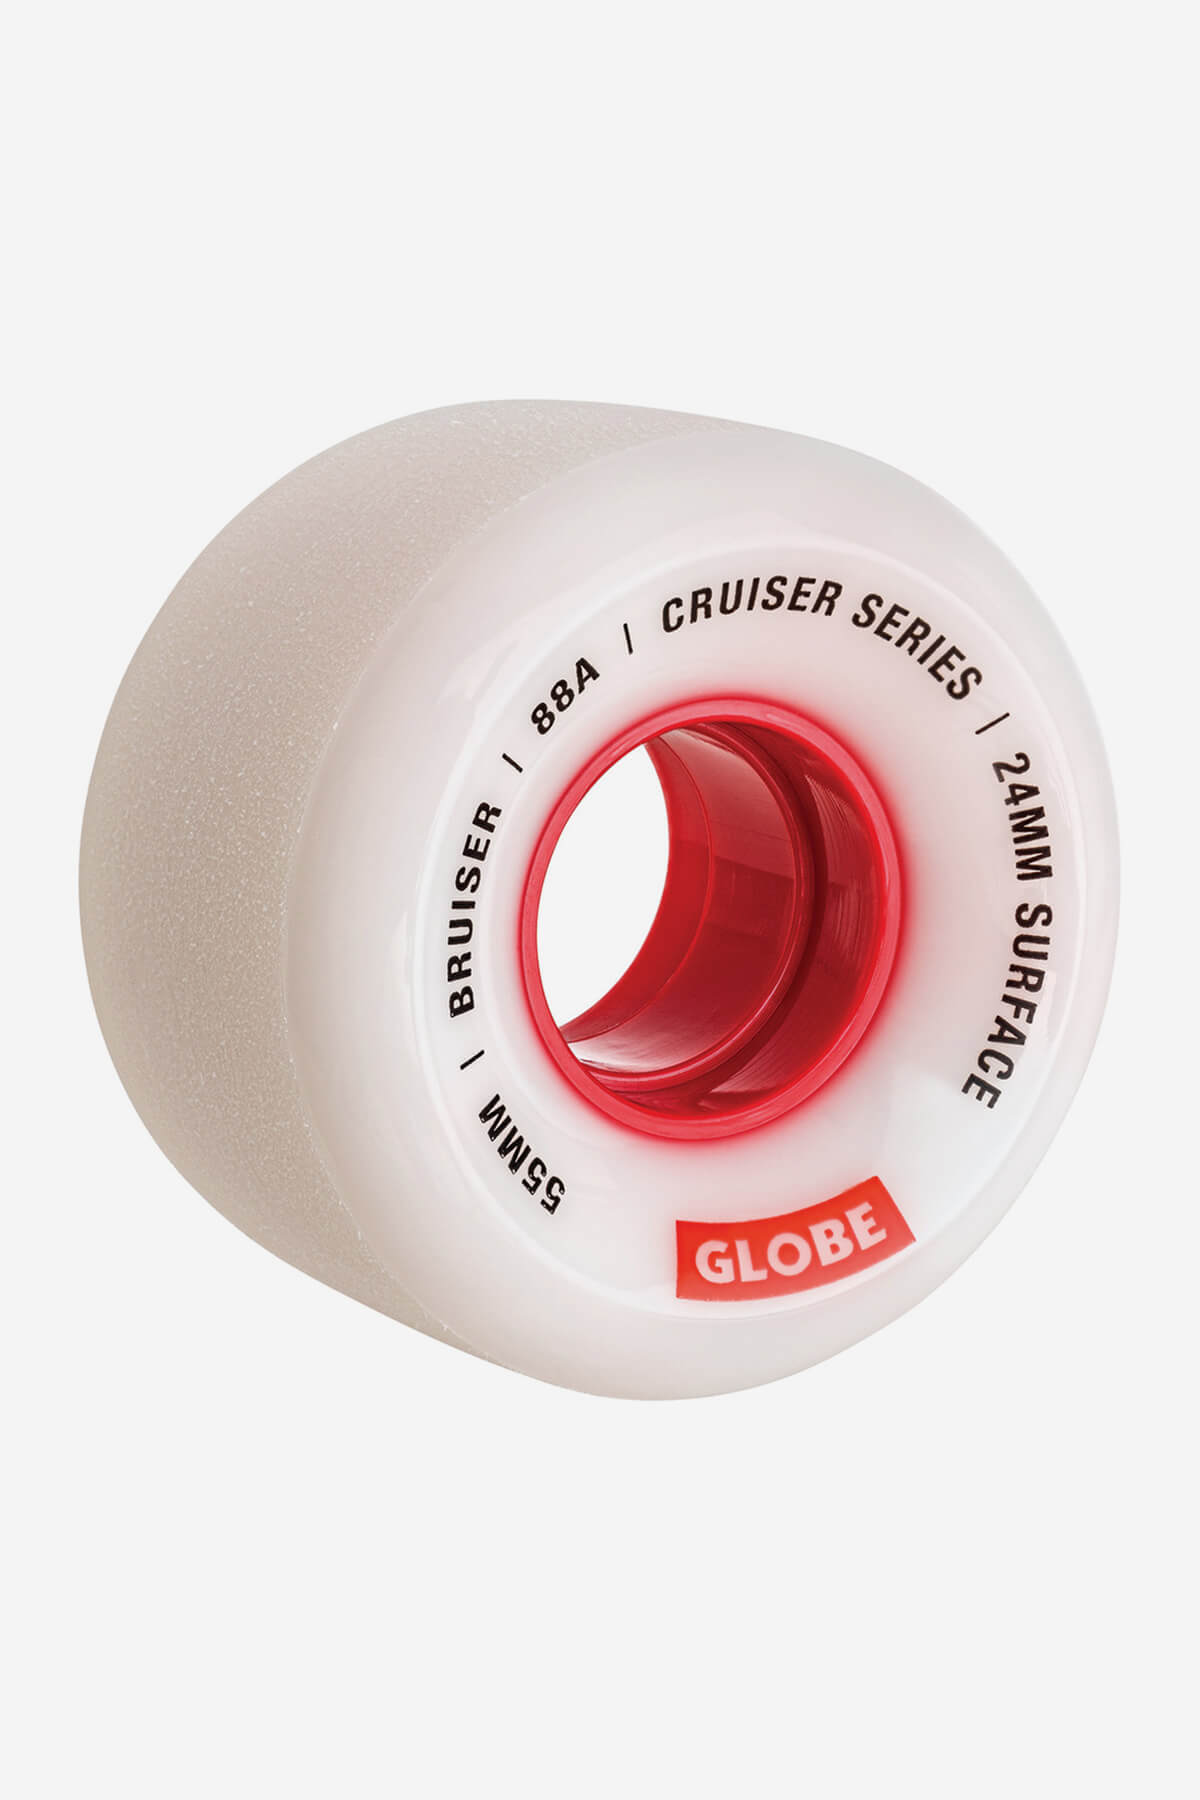 Globe Rollen Bruiser Cruiser Skateboard  Wheel  55mm in White/Red/55